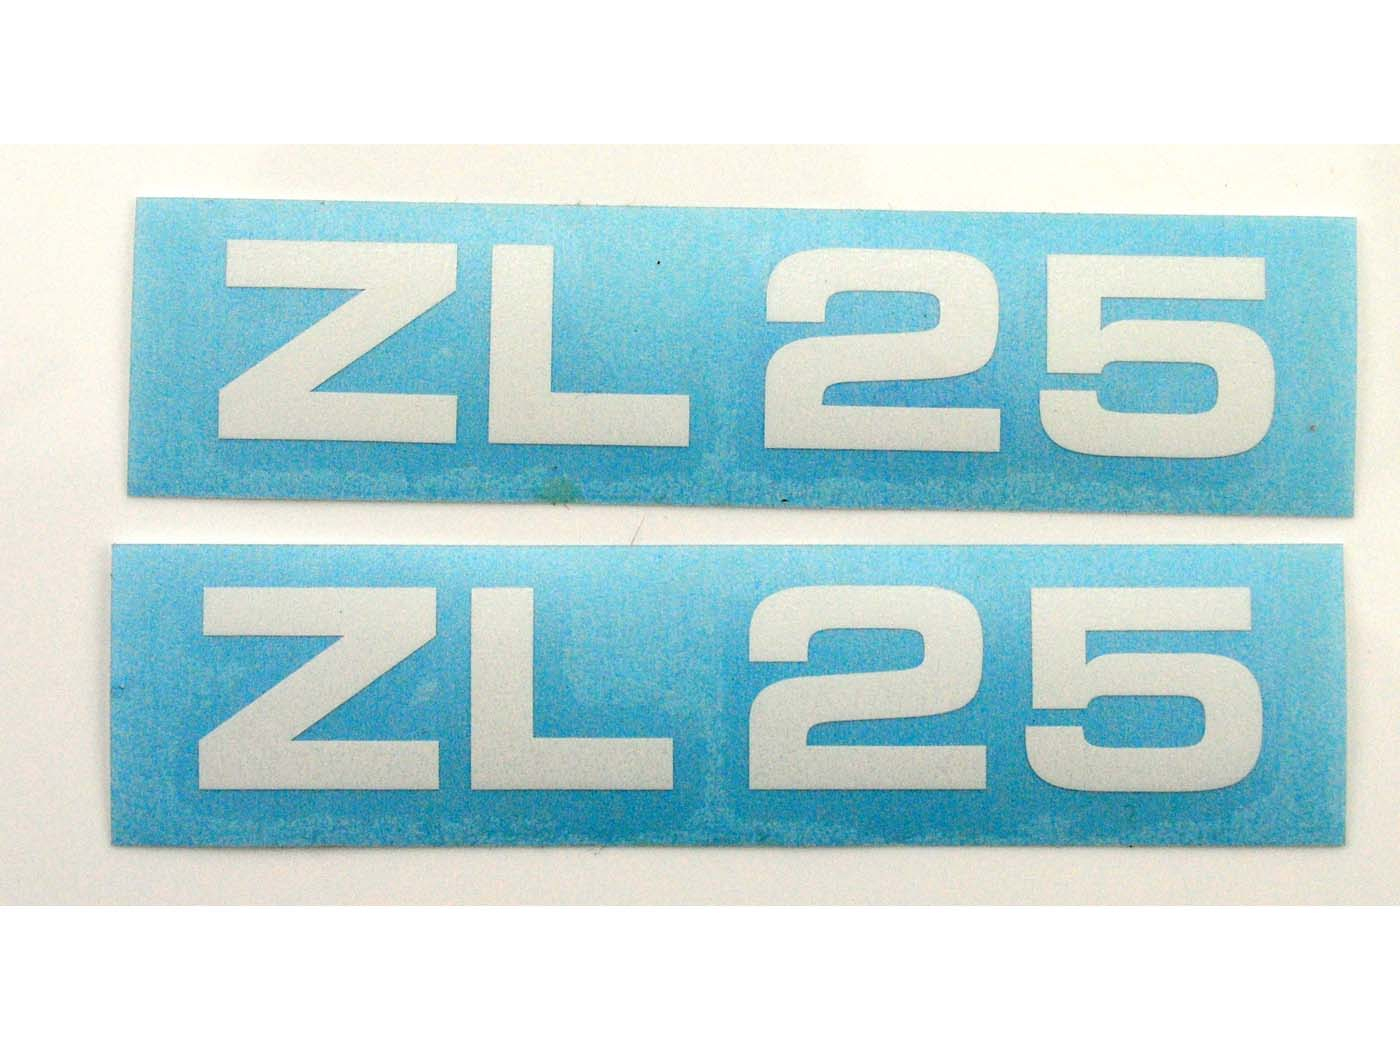 Sticker Set MOGA 2 Delig breede 95mm Hoogte 17mm voor ZL 25 van Zündapp